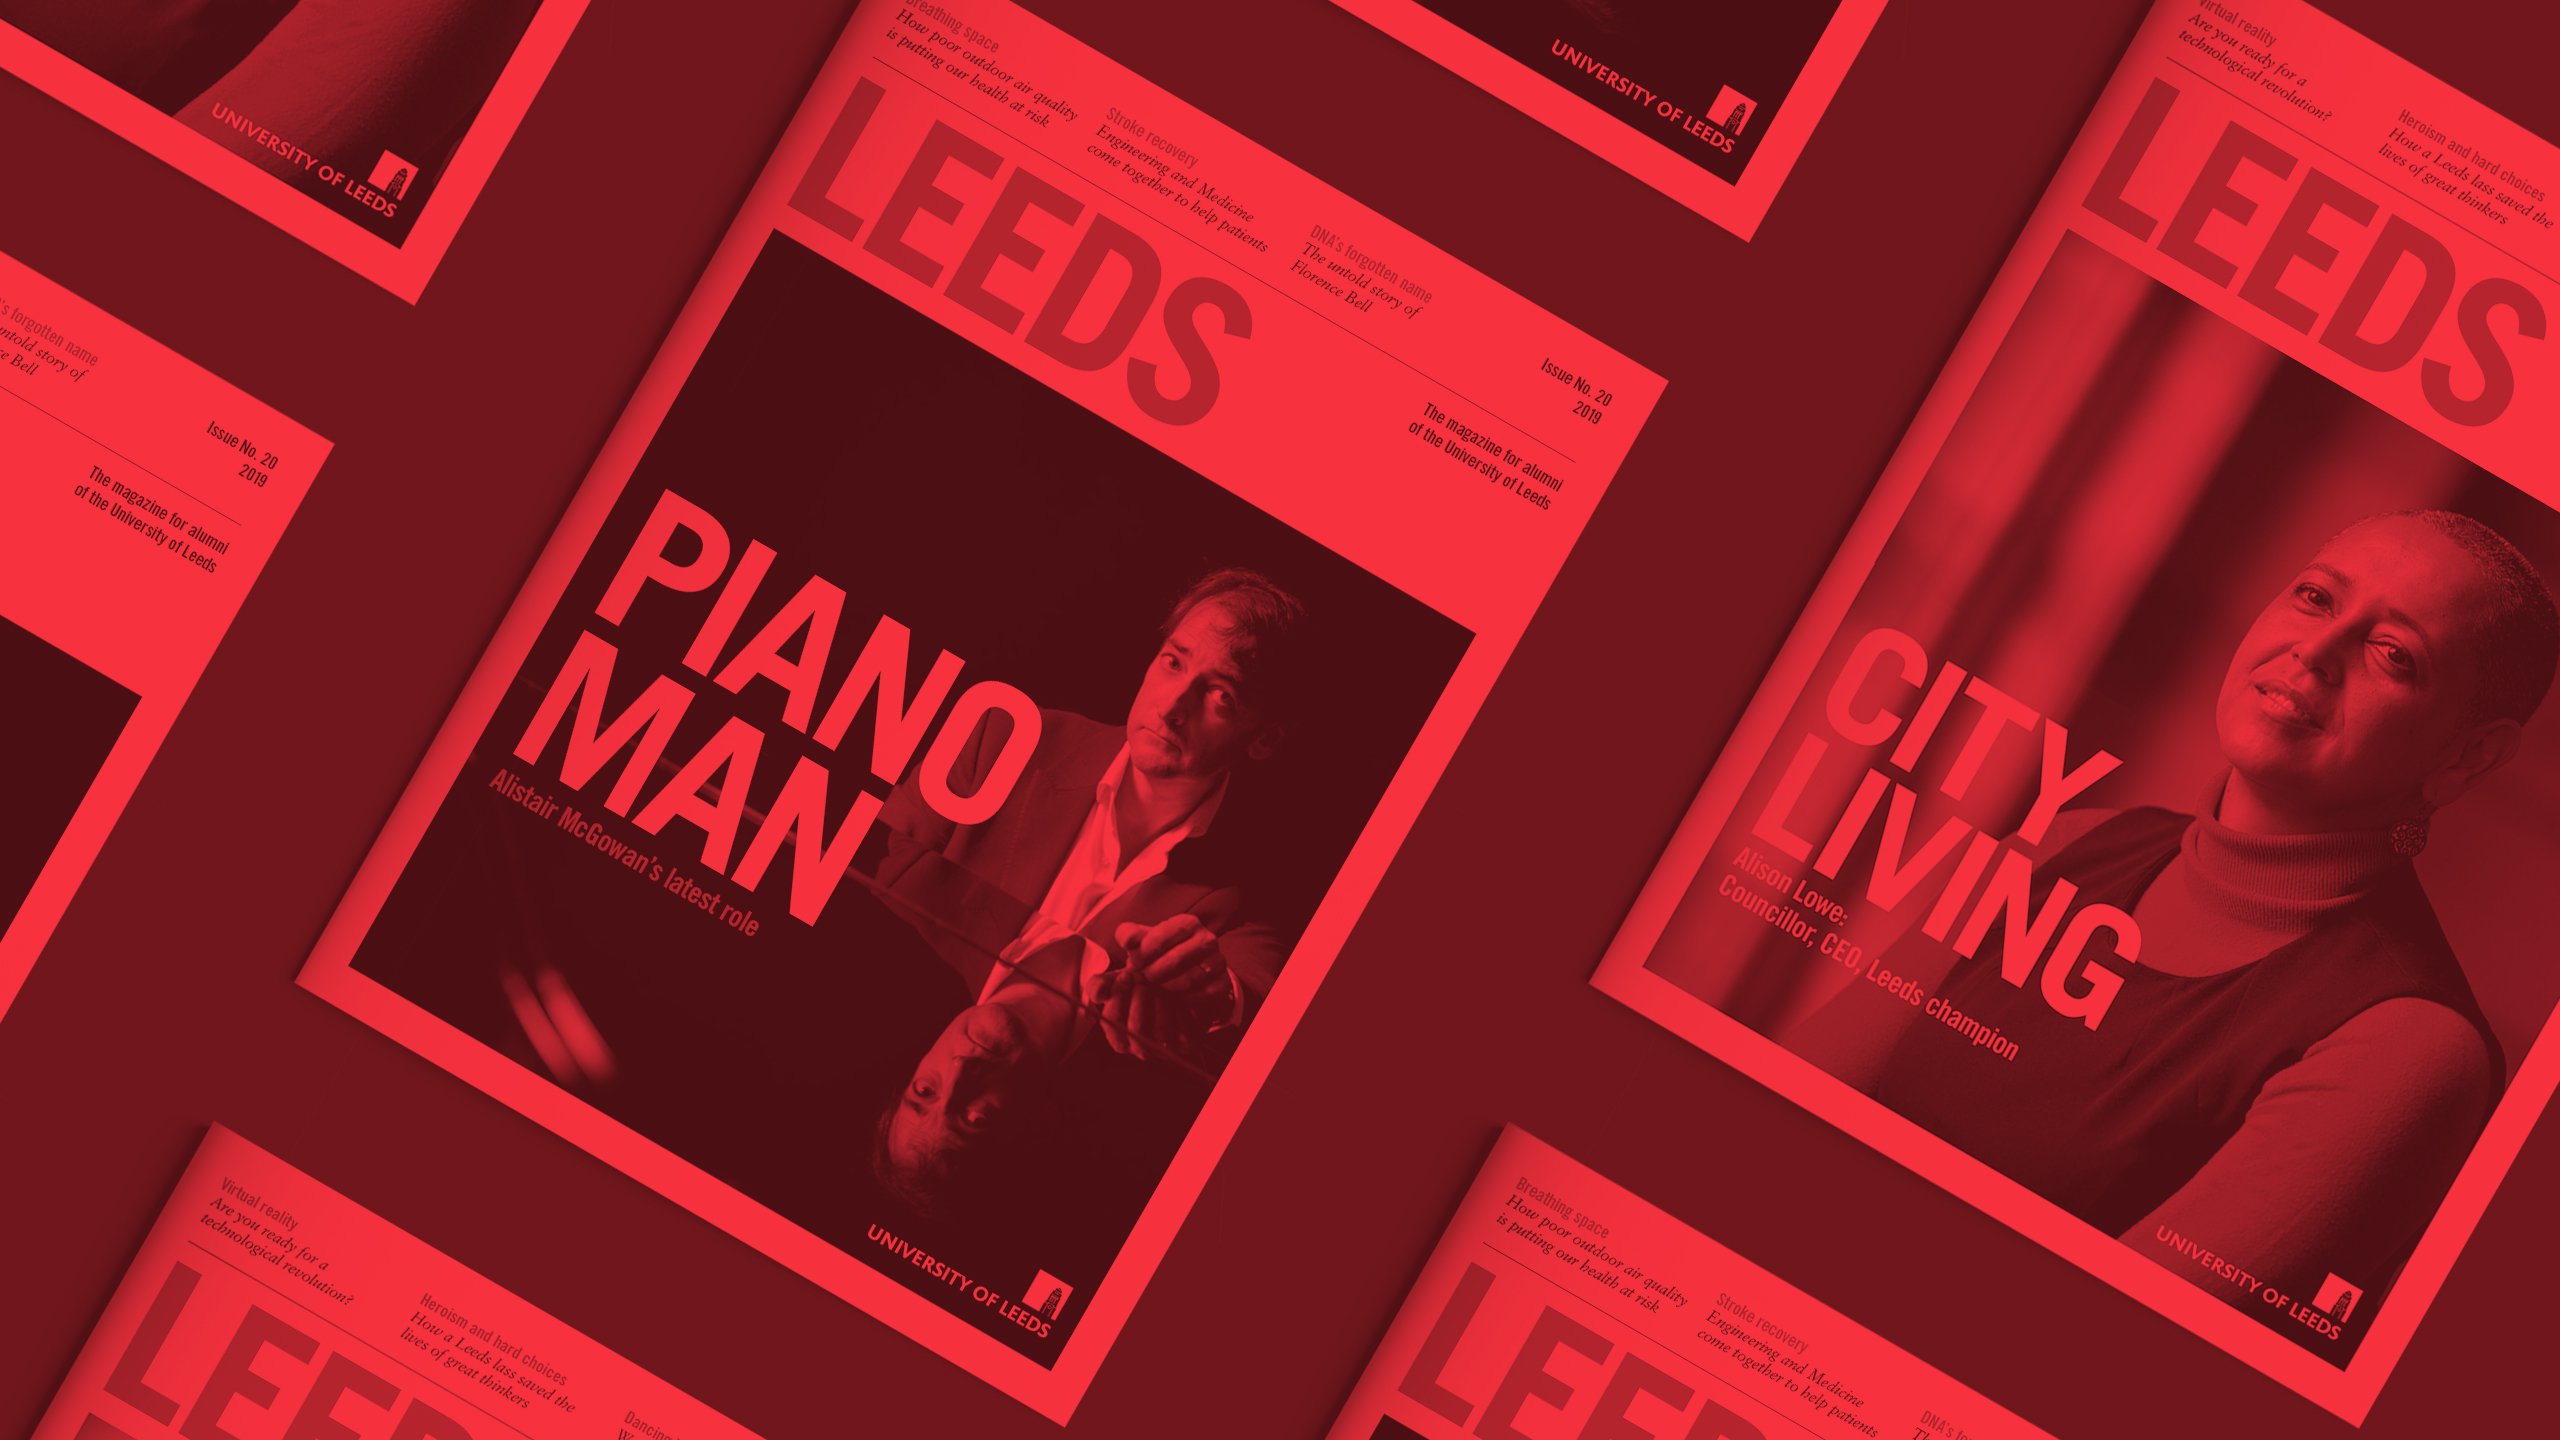 564Alumni Magazine – University of Leeds